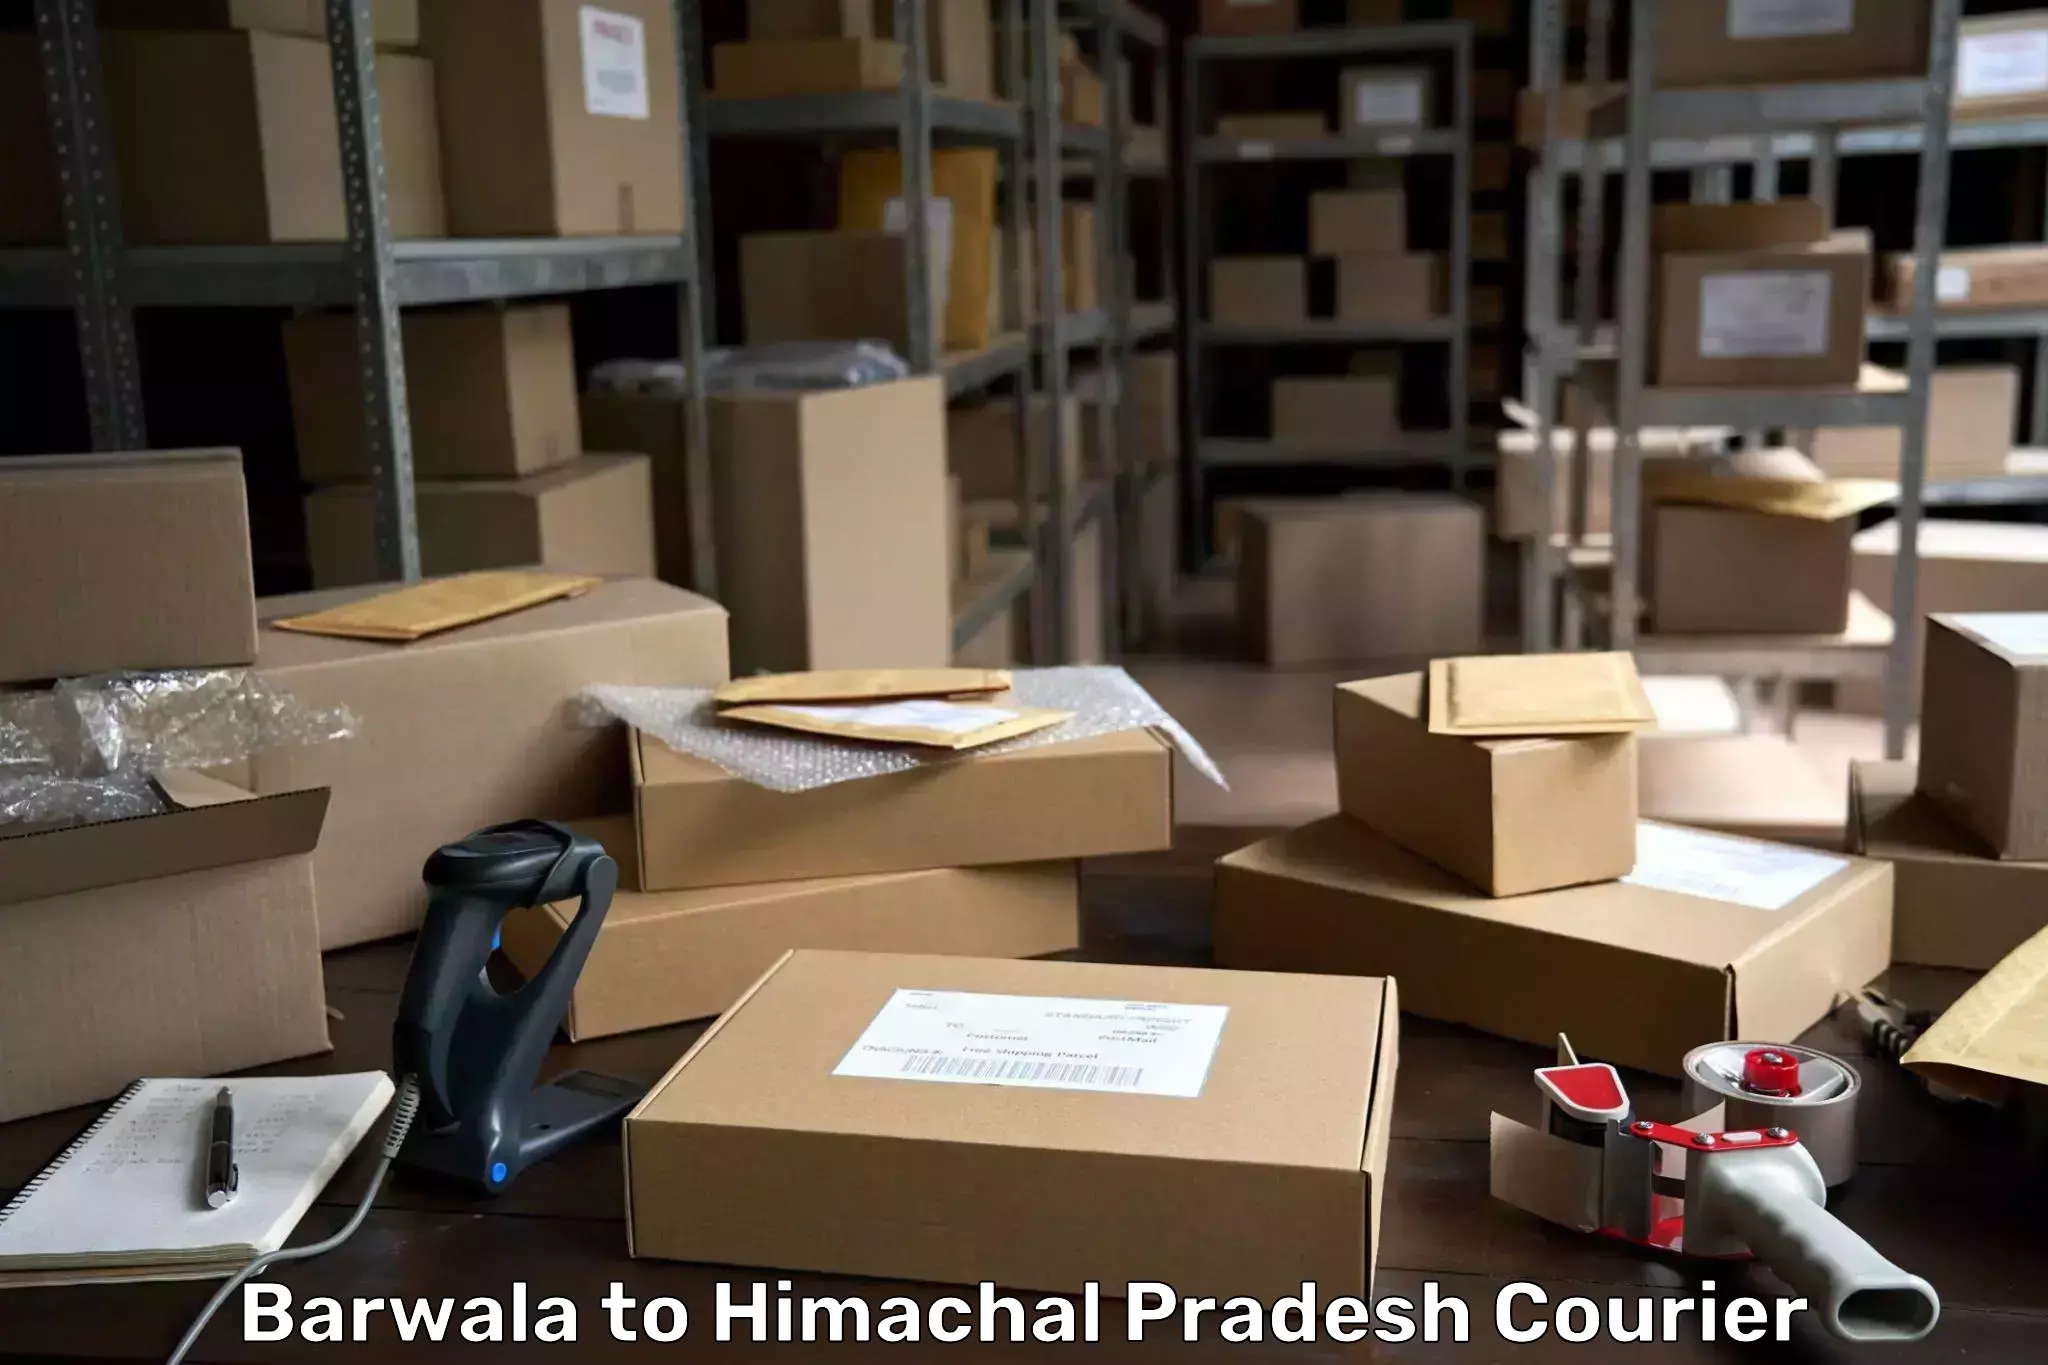 Digital courier platforms Barwala to Himachal Pradesh